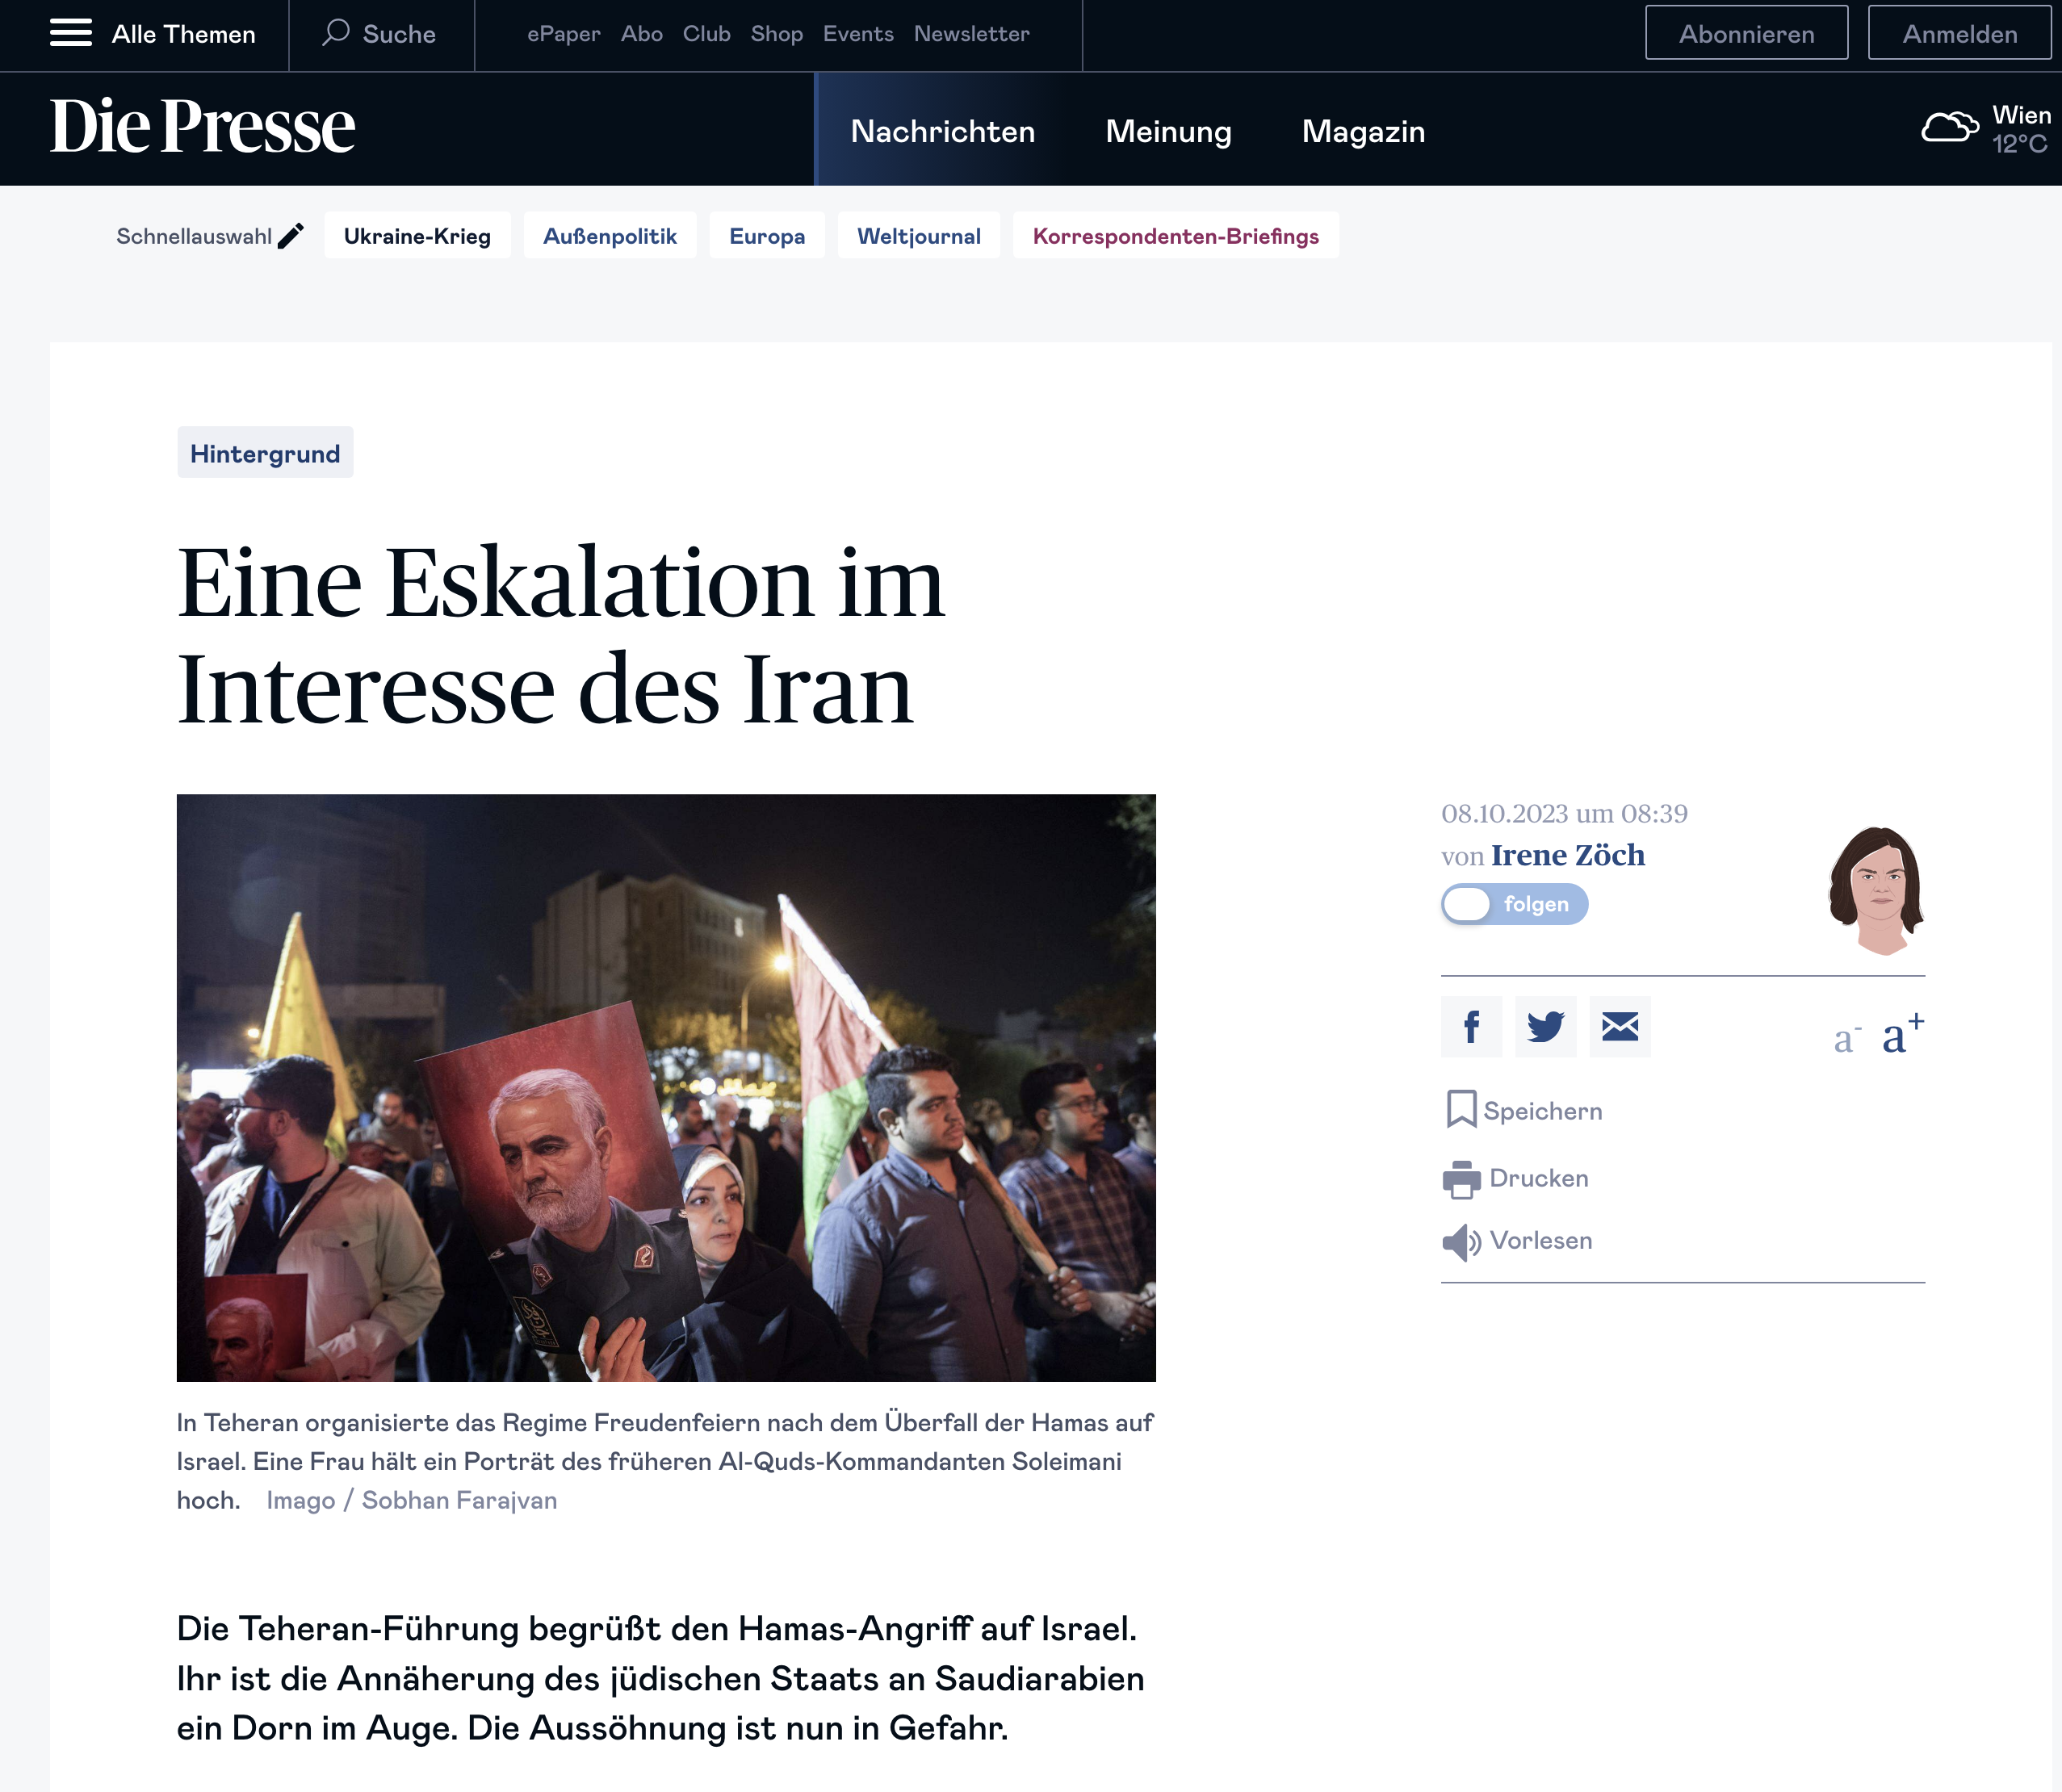 Published - Die Presse